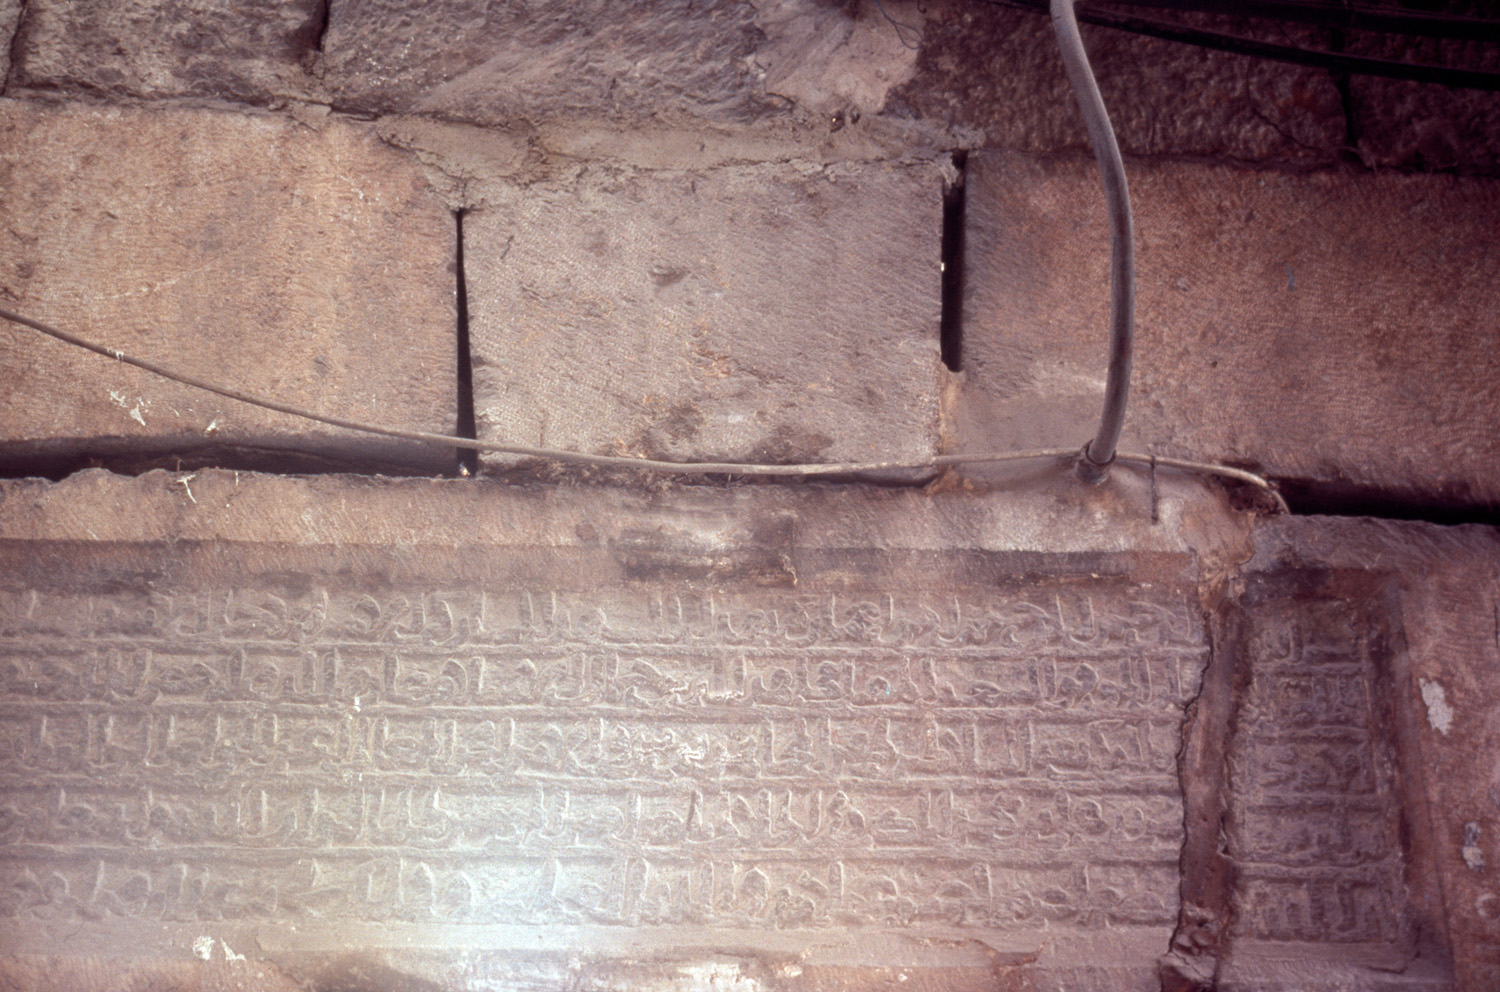 Inscription detail